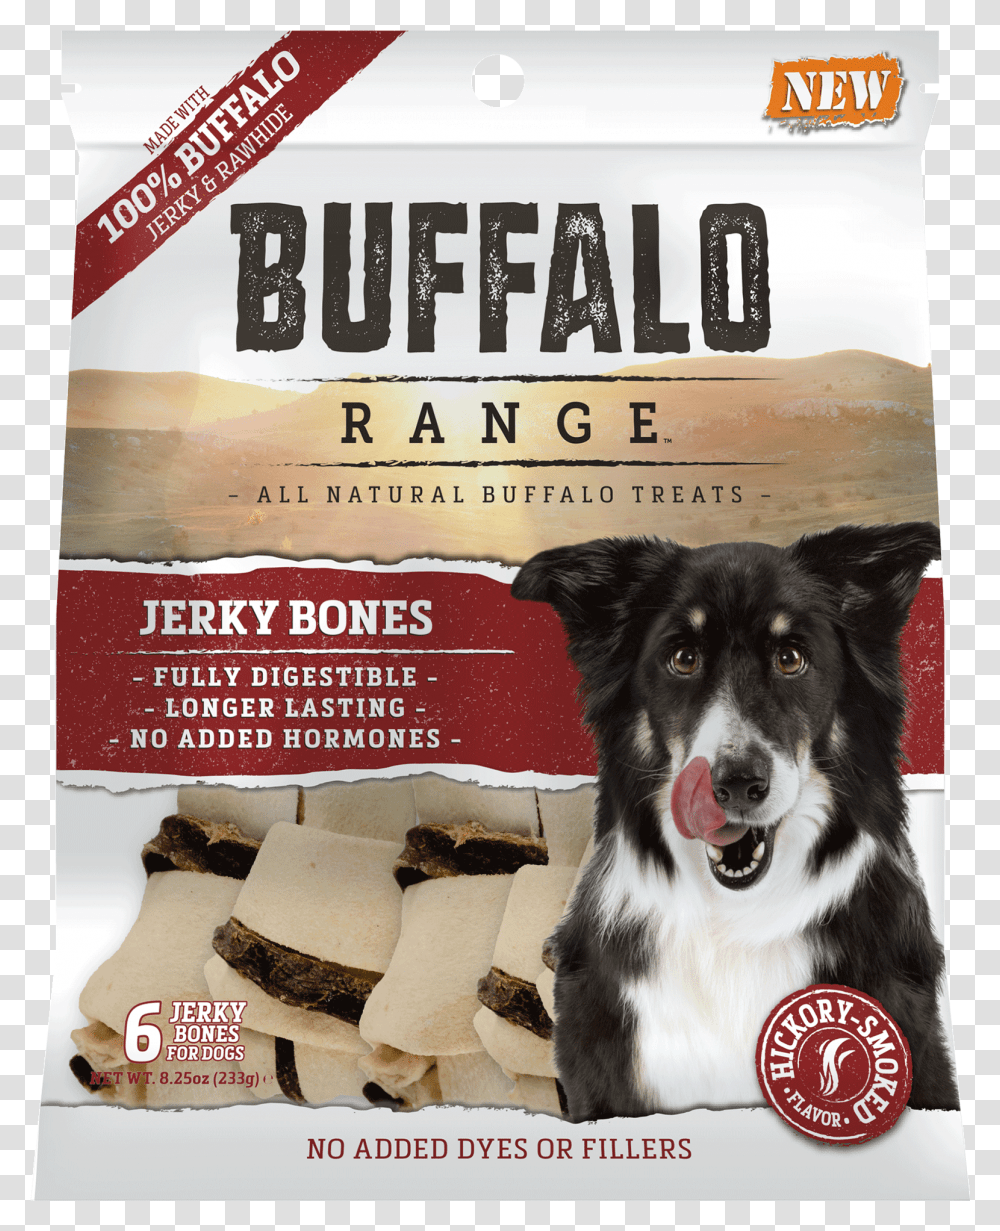 Cadet Dog Food Background, Advertisement, Poster, Pet, Canine Transparent Png